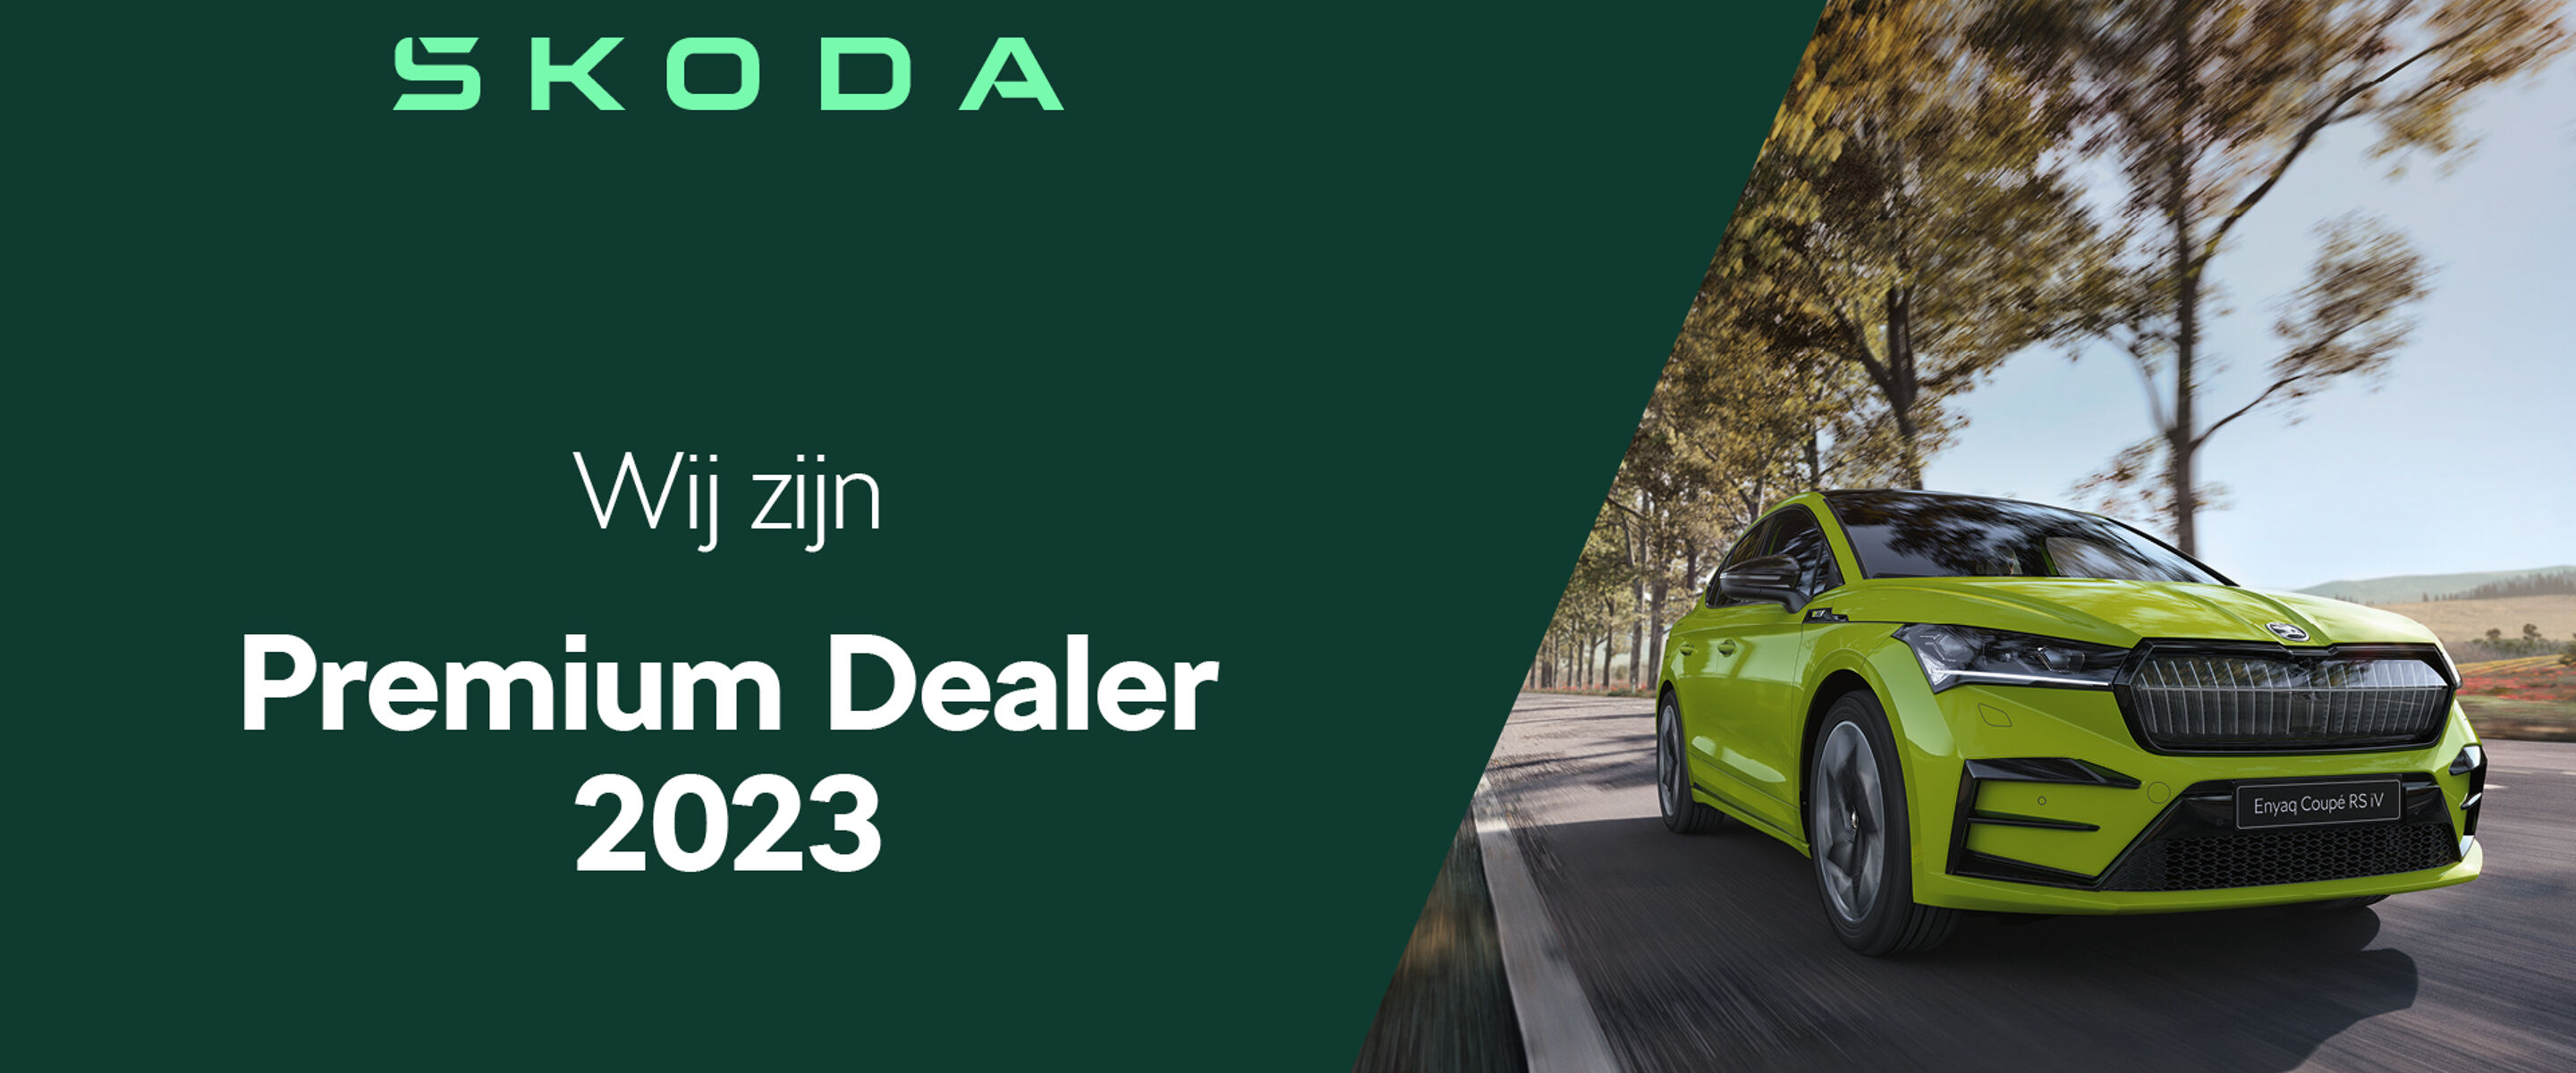 Wij zijn Škoda Premium Dealer van het jaar 2023